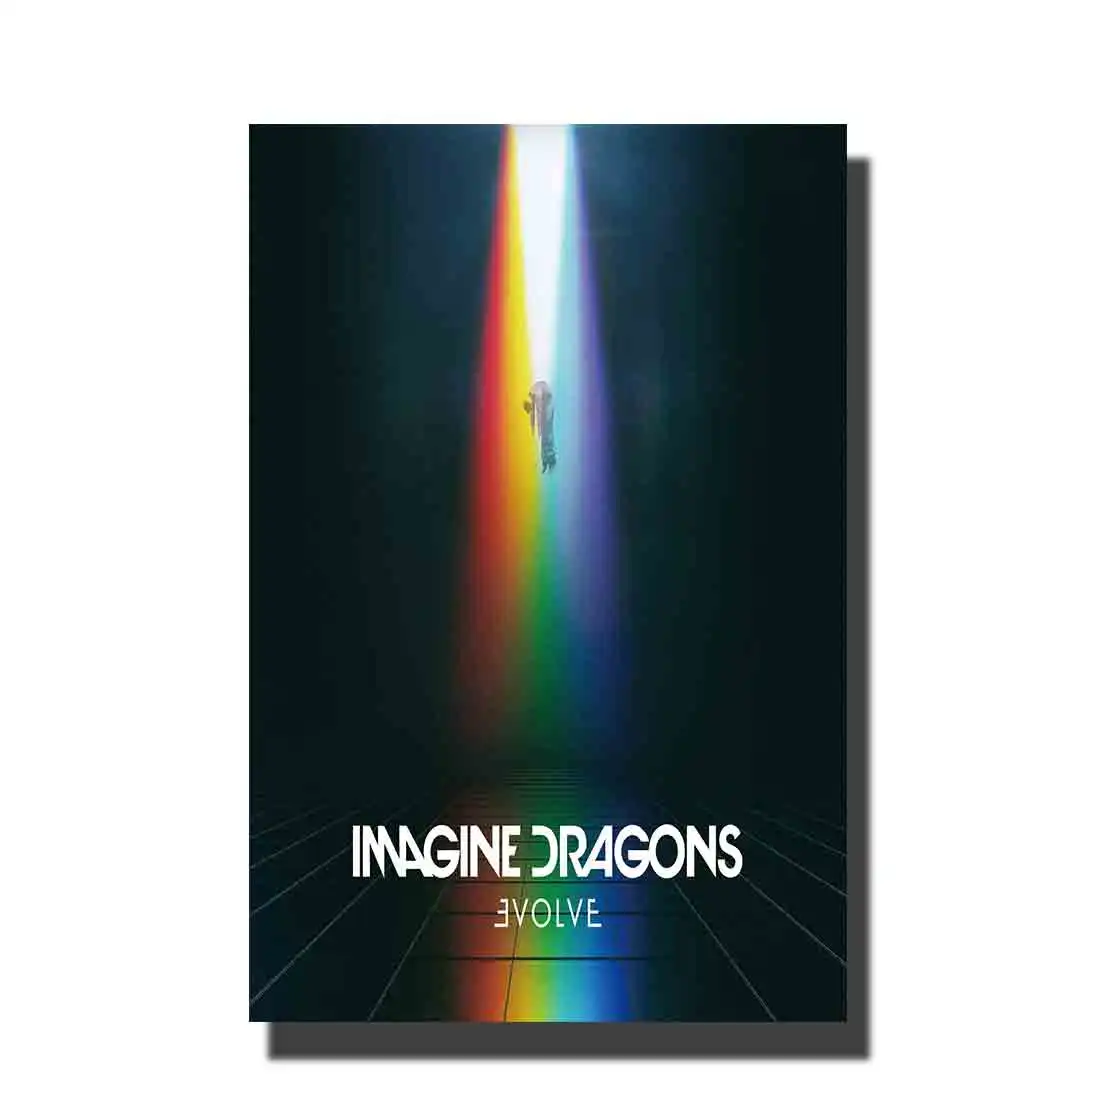 Художественный плакат распечатка картин дракон альбом музыка Популярный